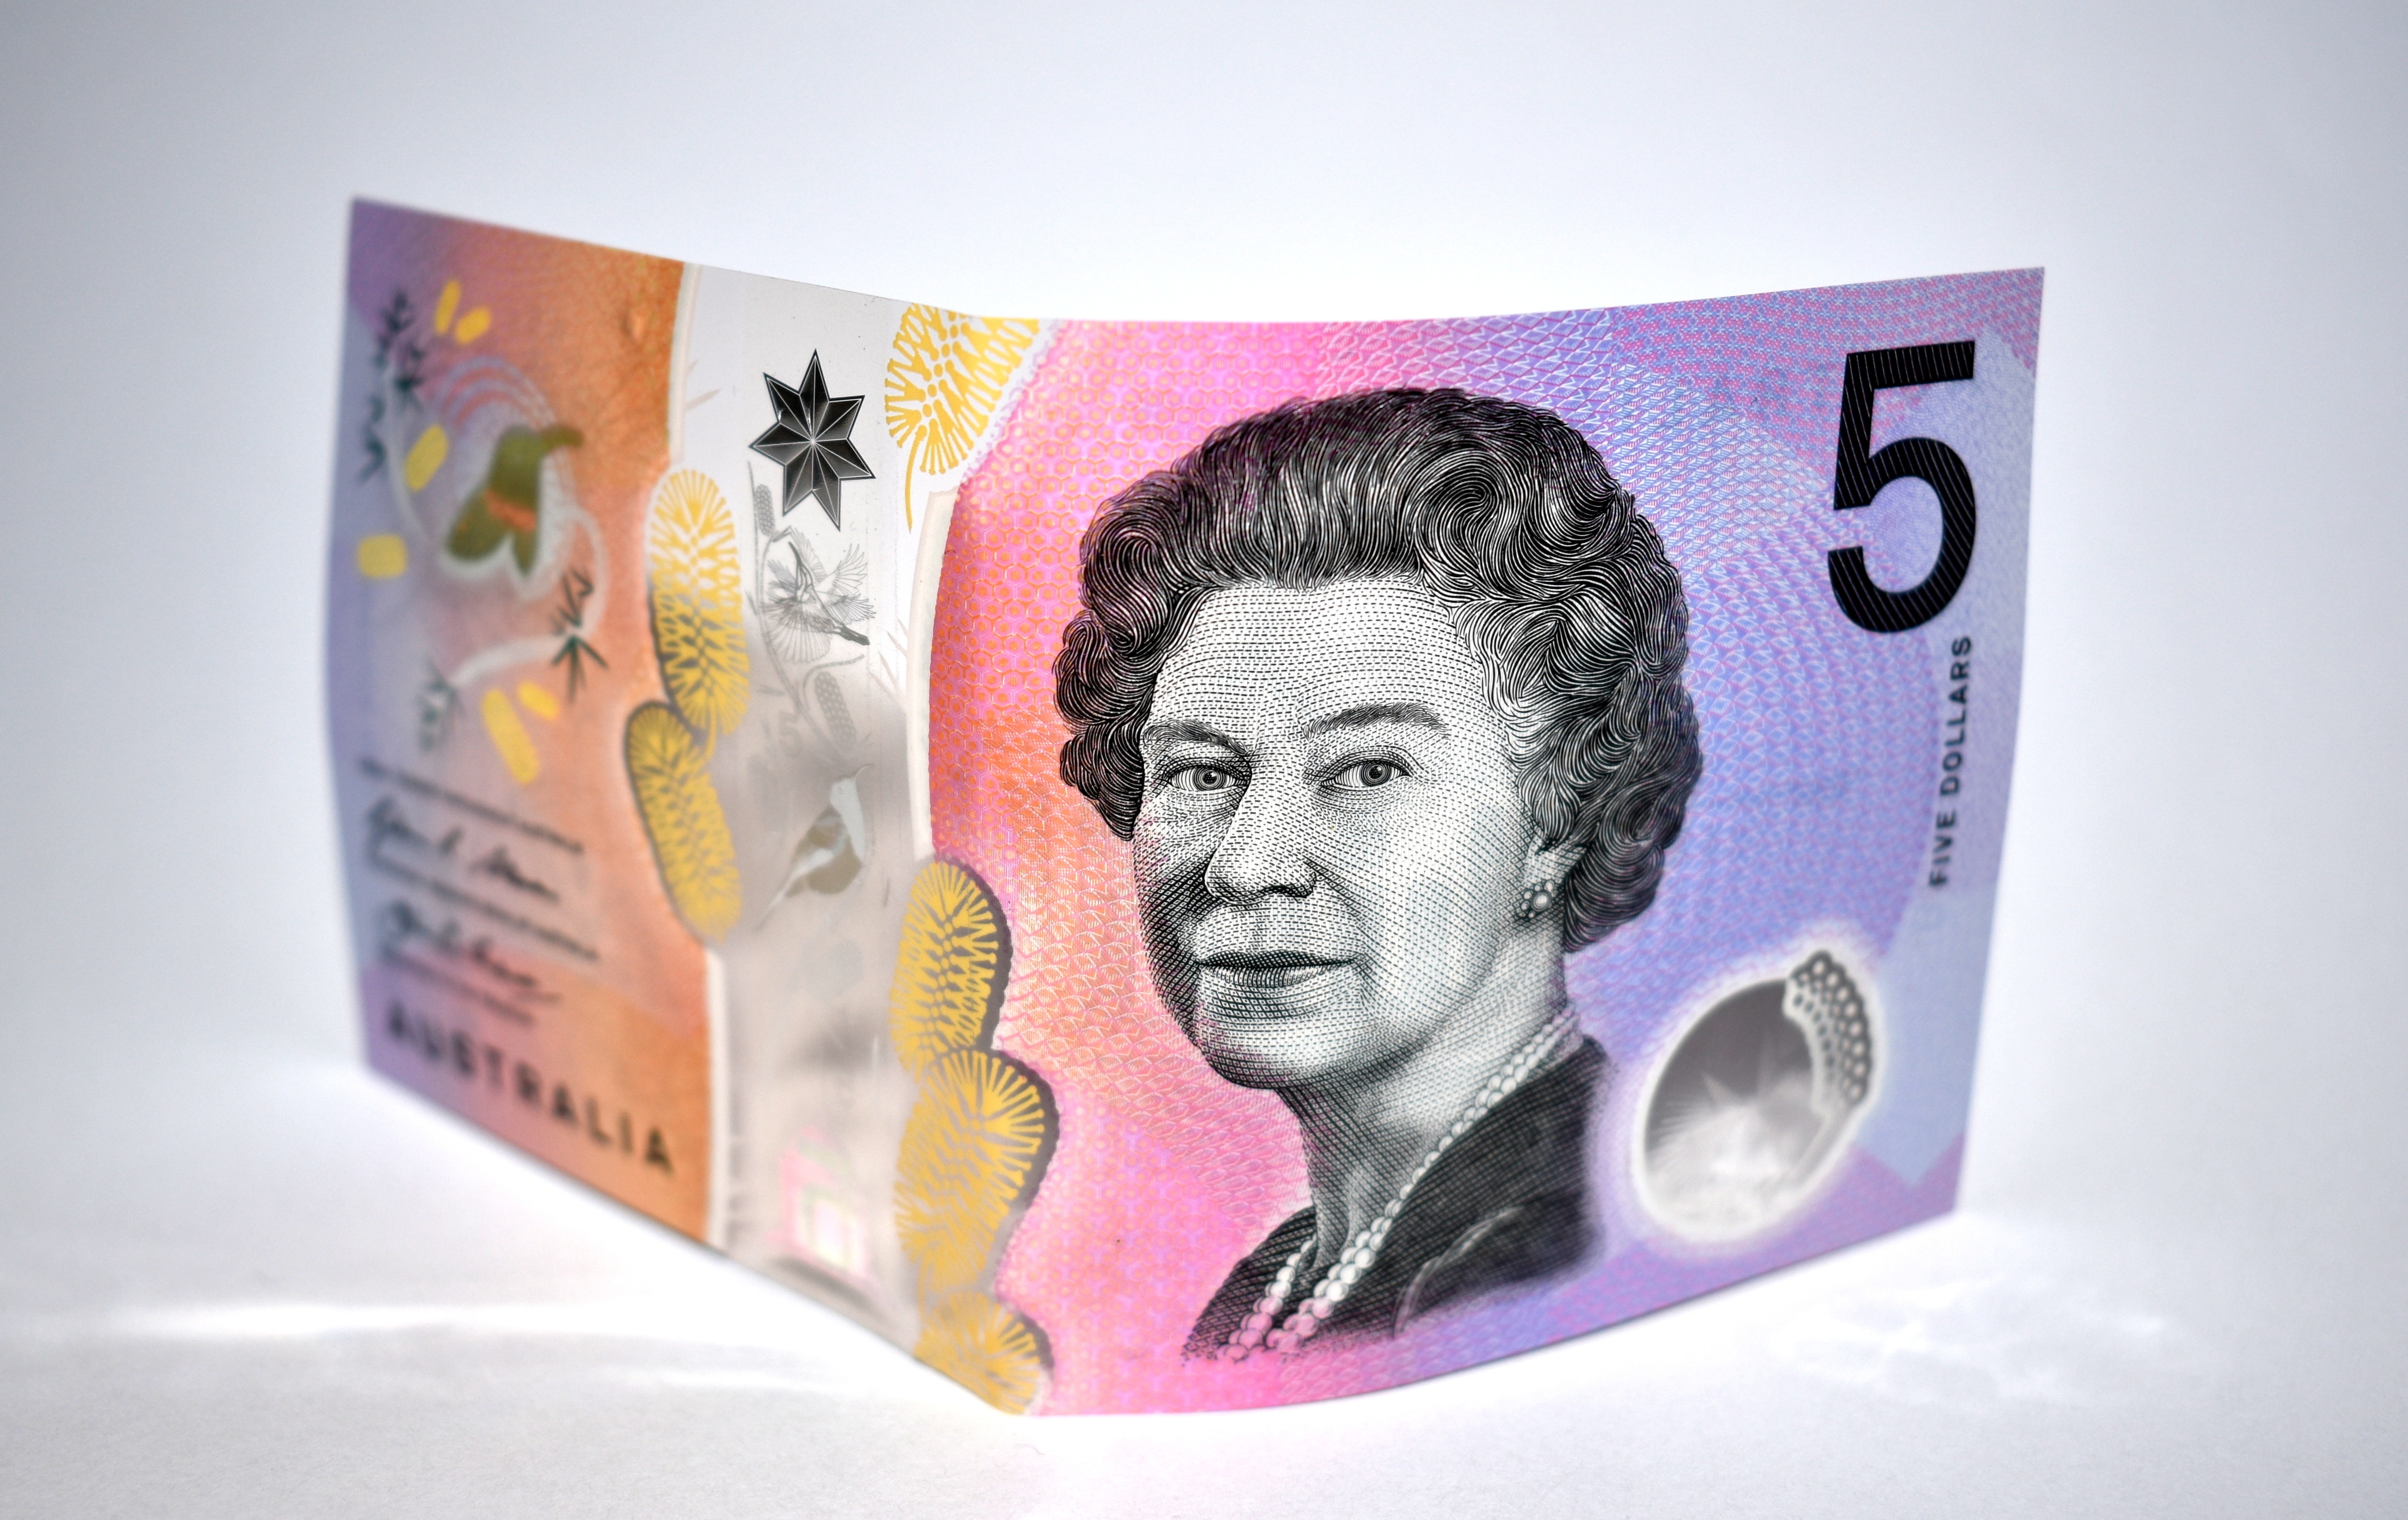 Australien - Zentralbank verzichtet künftig auf Abbildung britischer Monarchen auf Geldscheinen